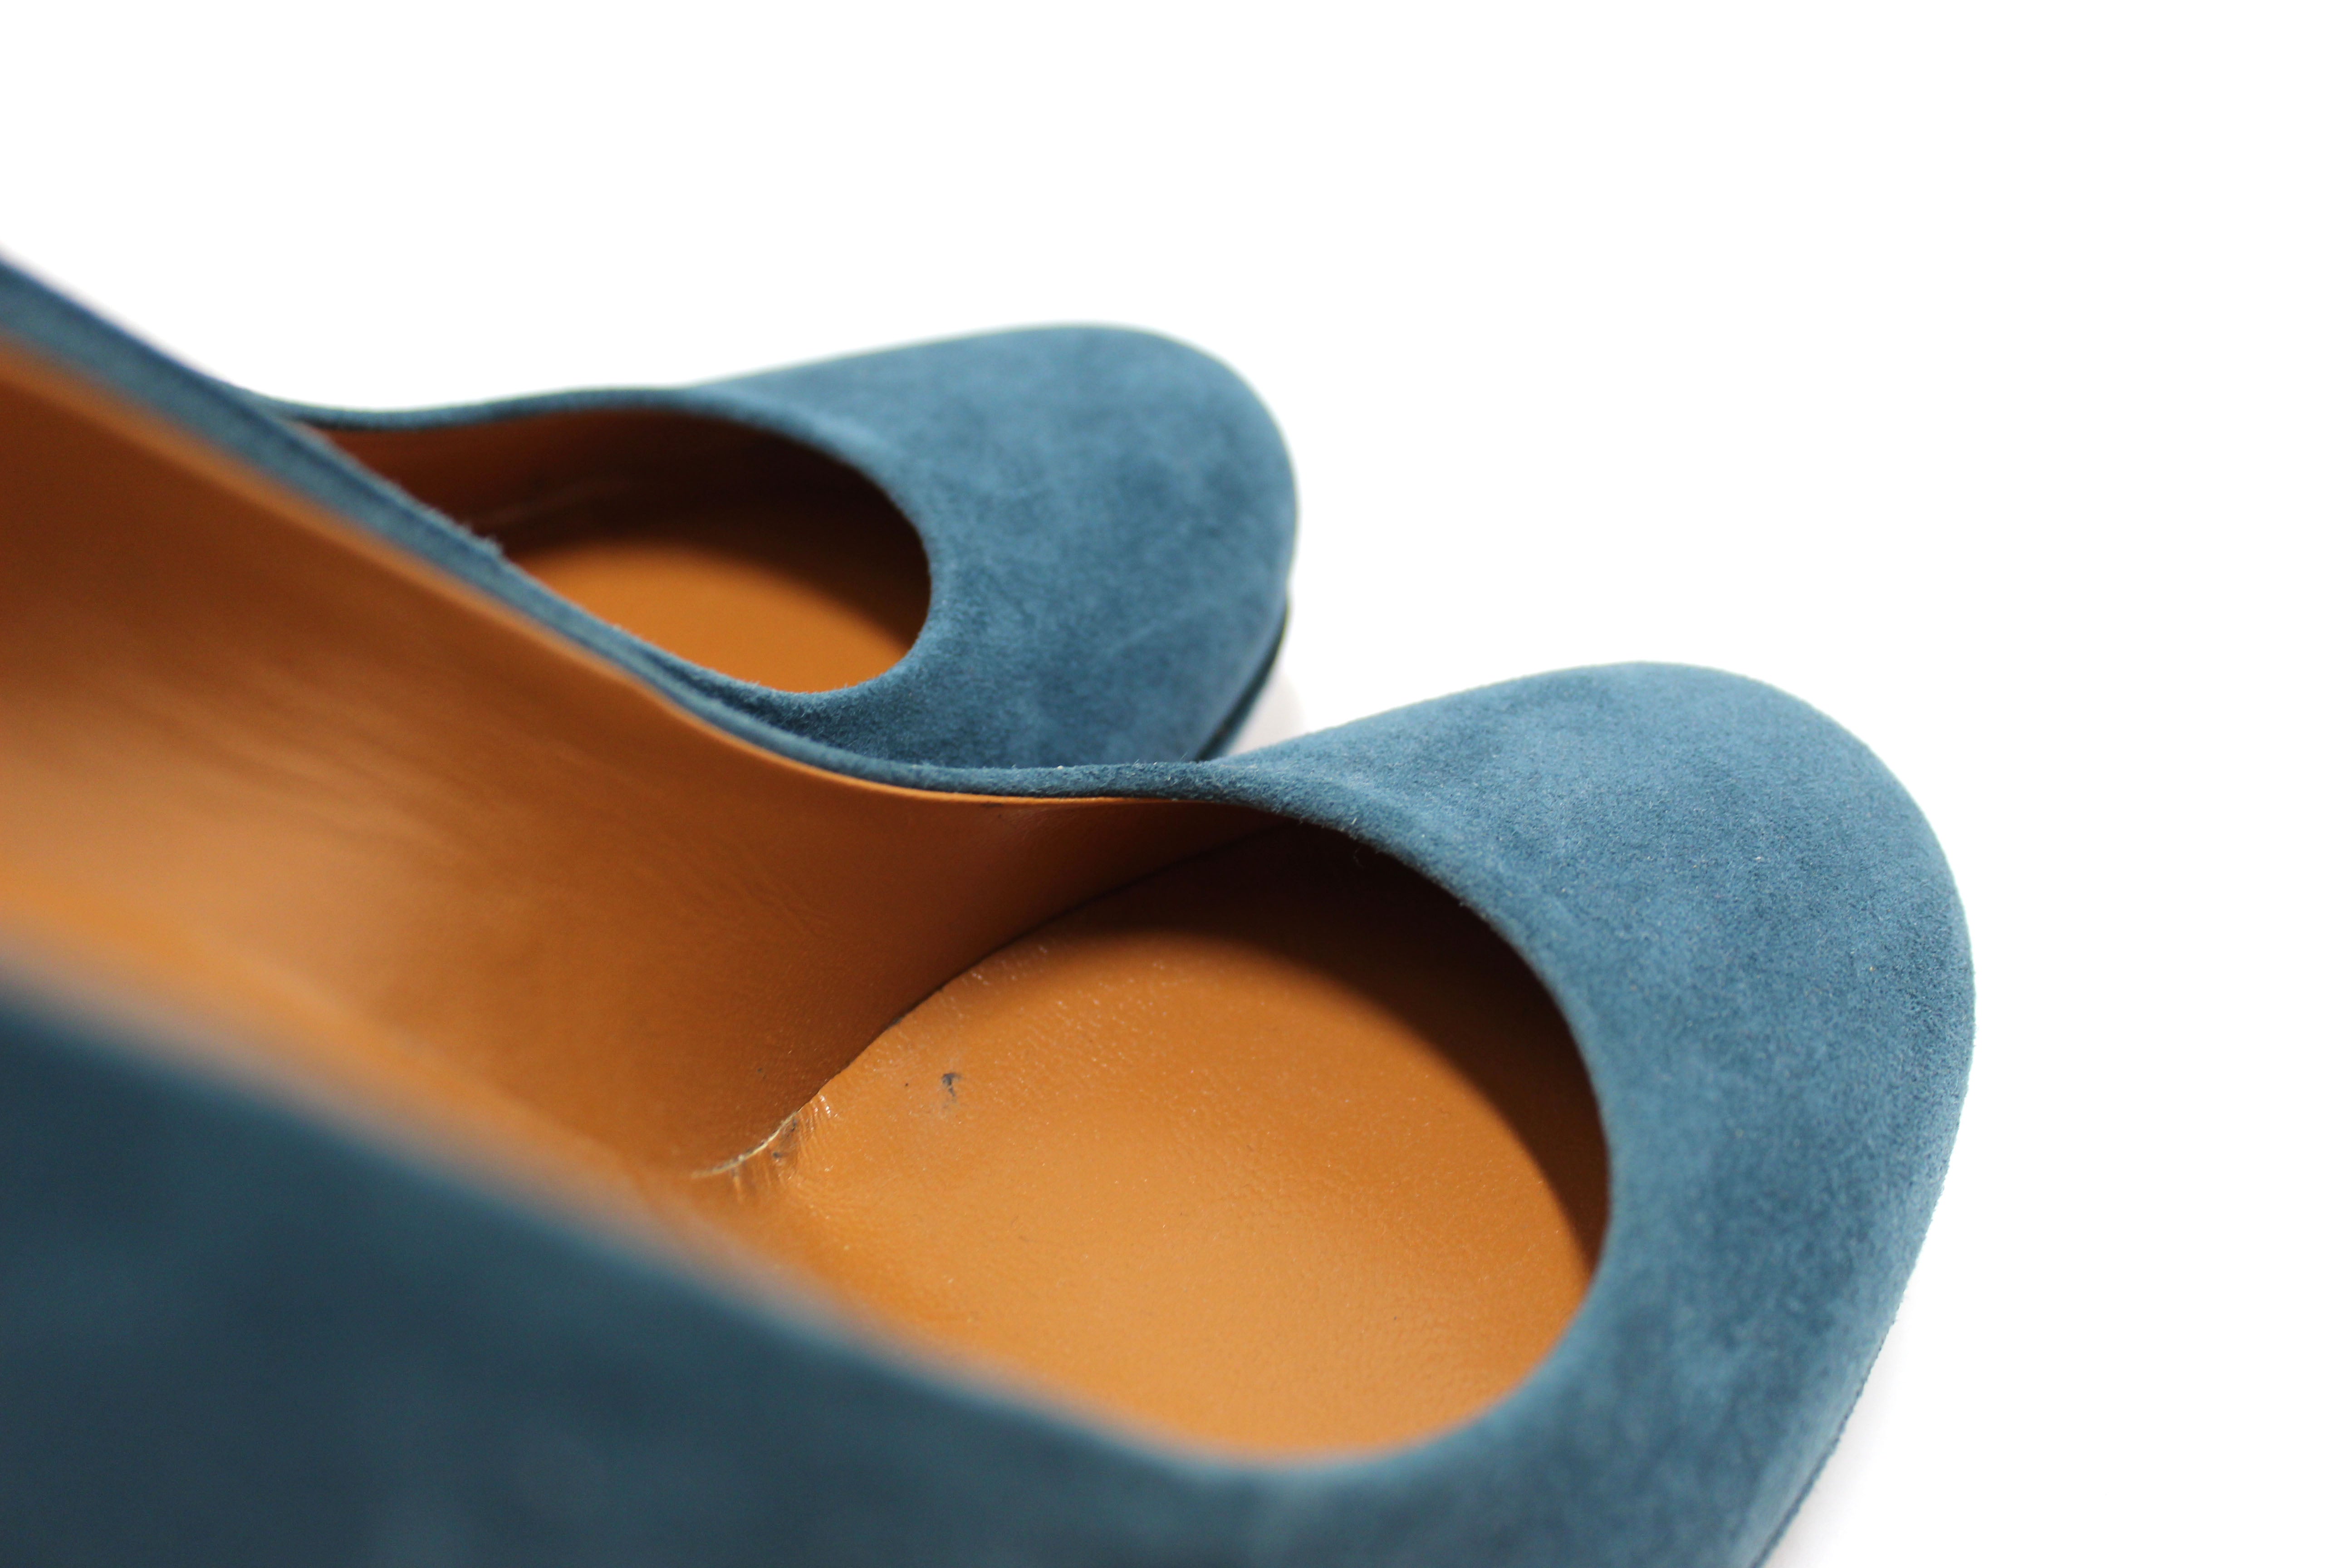 Authentic Gucci Blue Suede Leather Platform Pump Shoes Size 36.5